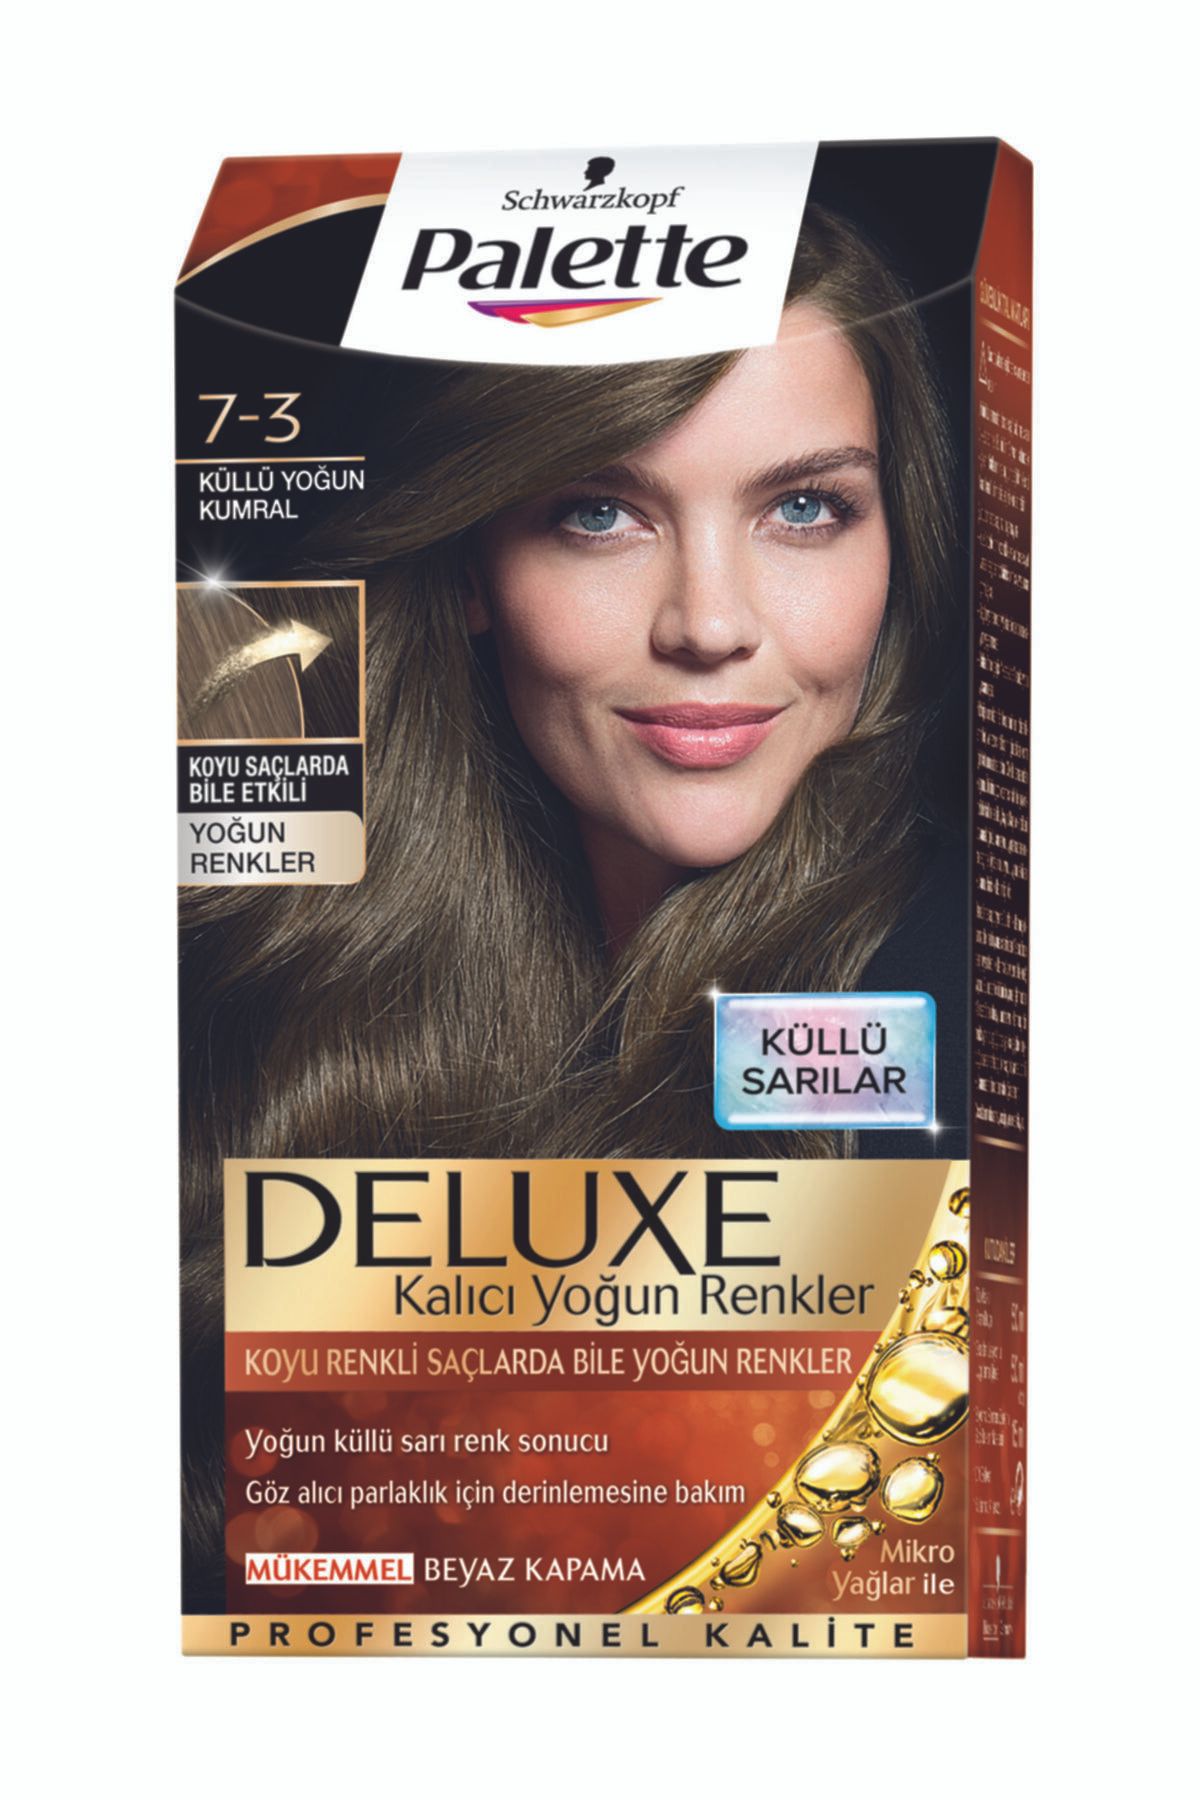 Palette Deluxe Yoğun Renkler 7-3 Küllü Yoğun Kumral Saç Boyası